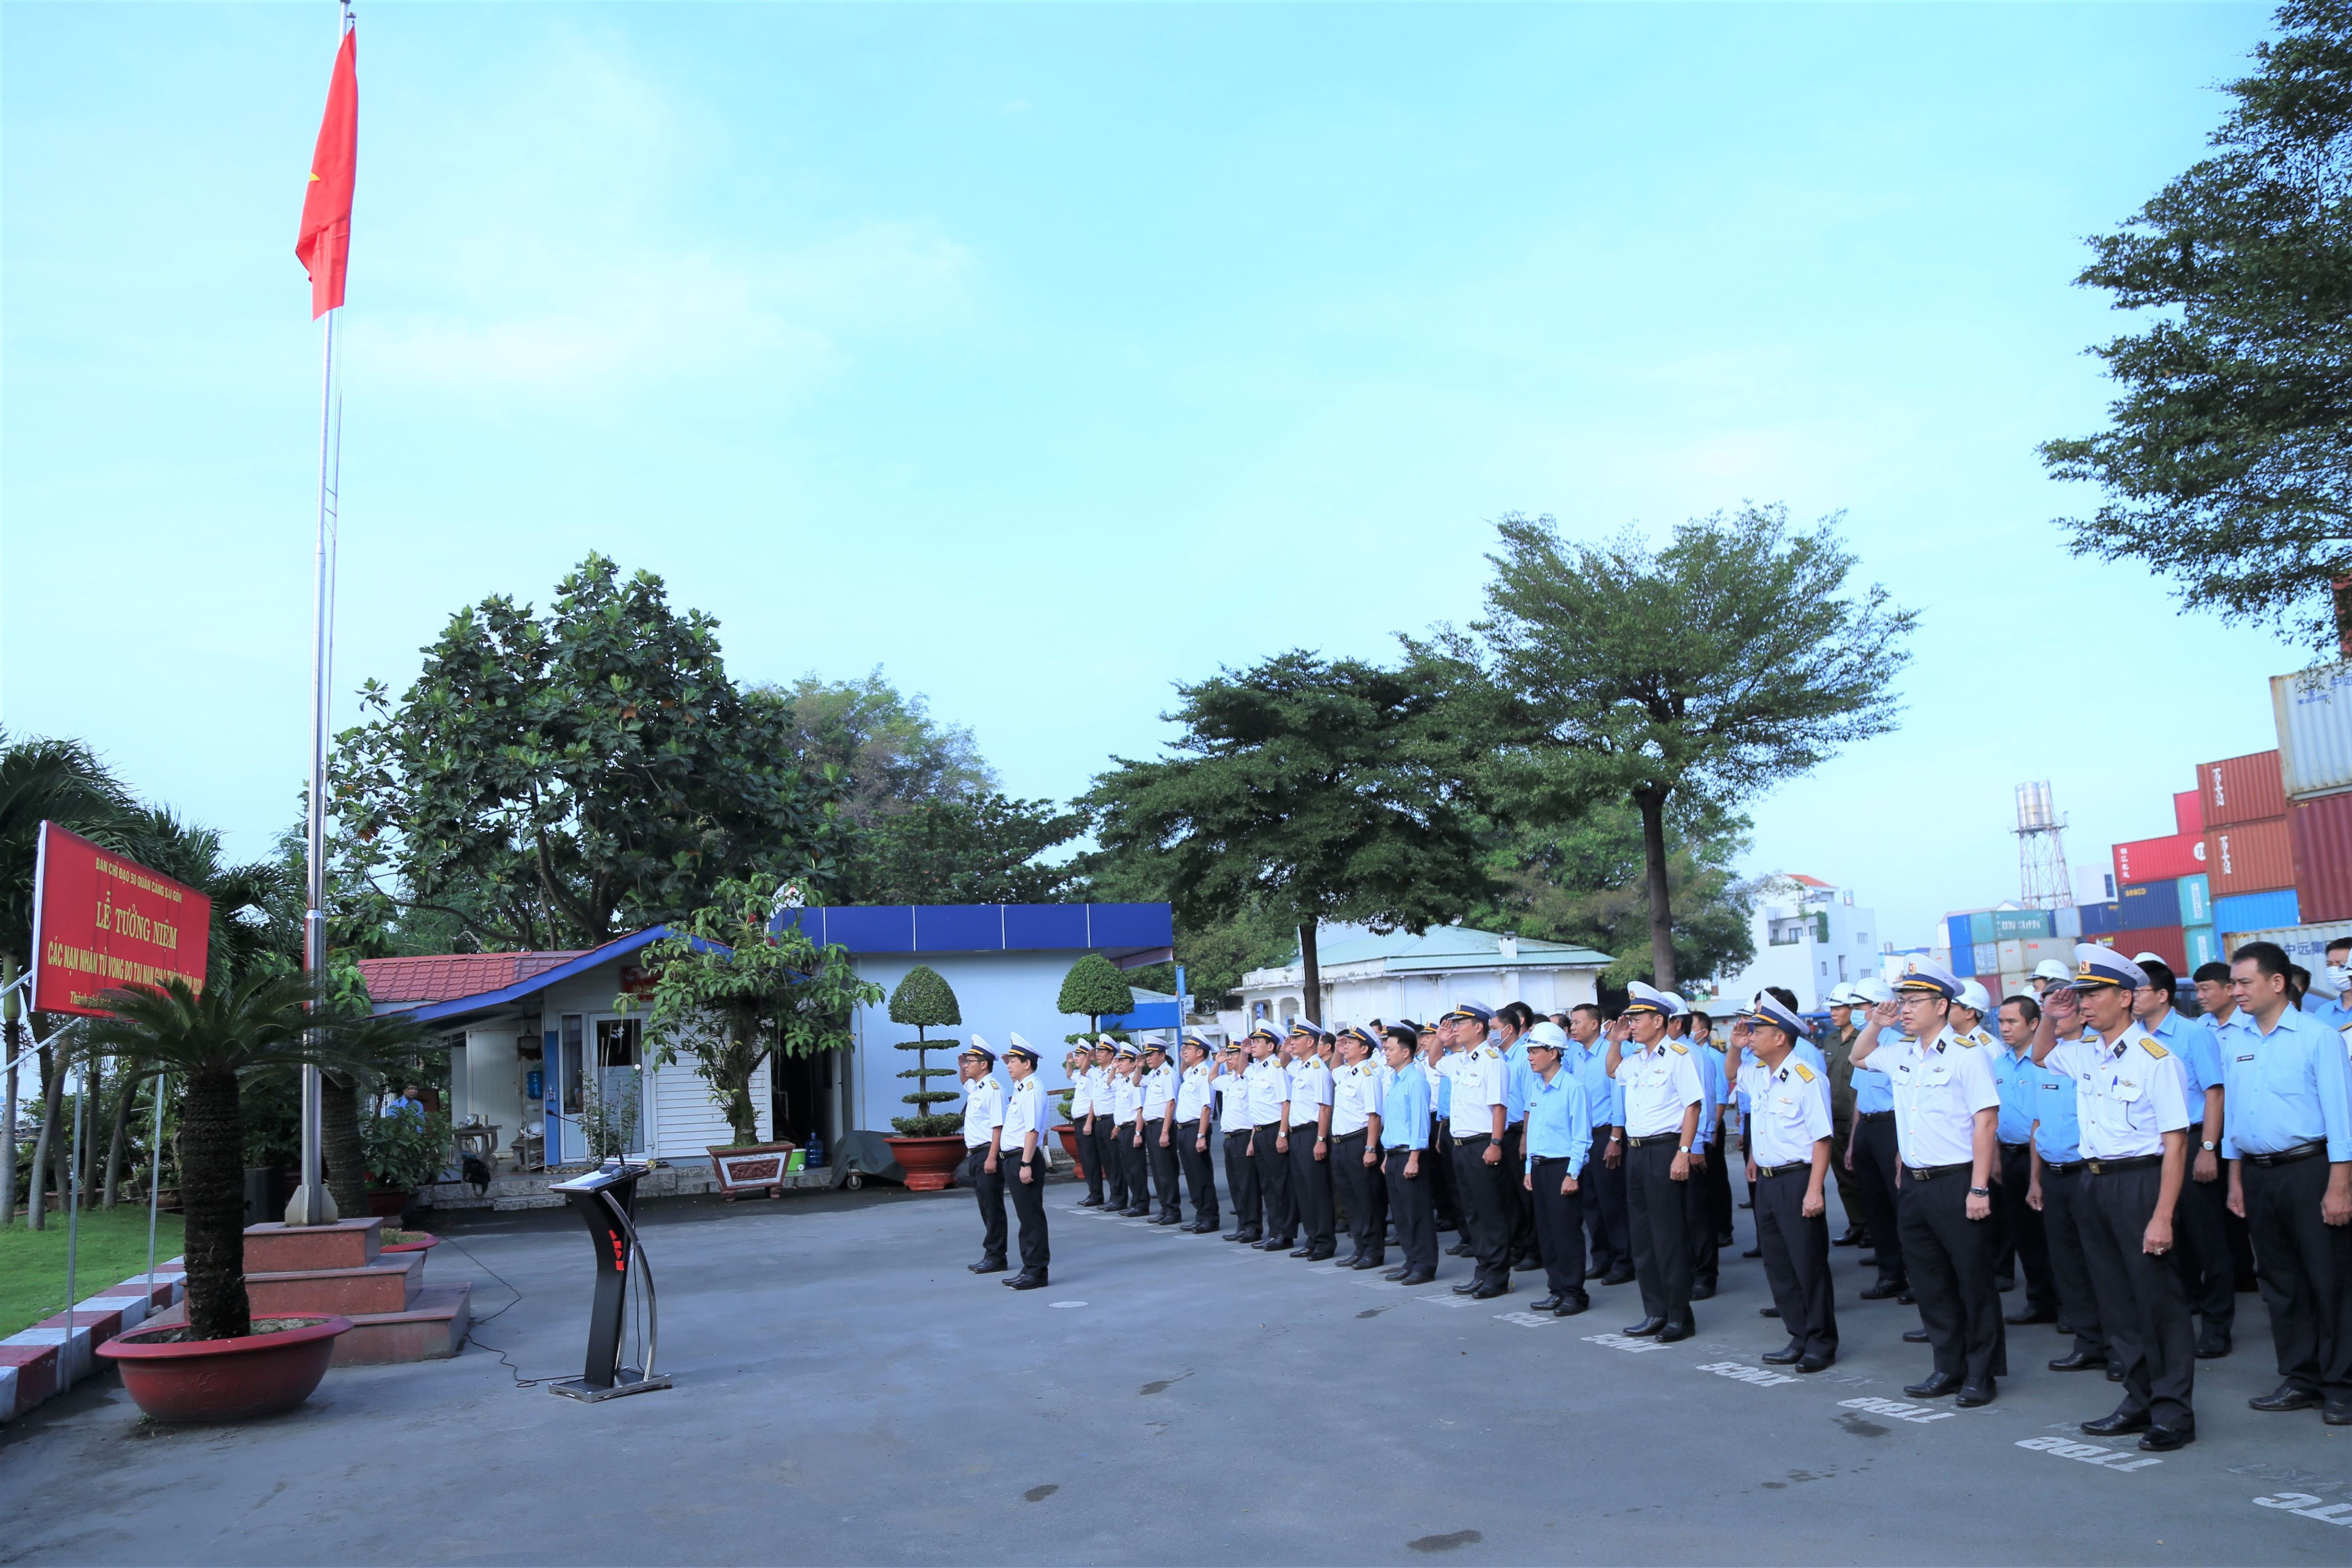 Tổng Công ty Tân Cảng Sài Gòn long trọng tổ chức Lễ tưởng niệm các nạn nhân tử vong vì tai nạn giao thông năm 2020 với sự tham gia của rất nhiều thành viên là đại diện của các cơ quan, đơn vị, công ty thành viên tại khu vực TP.HCM